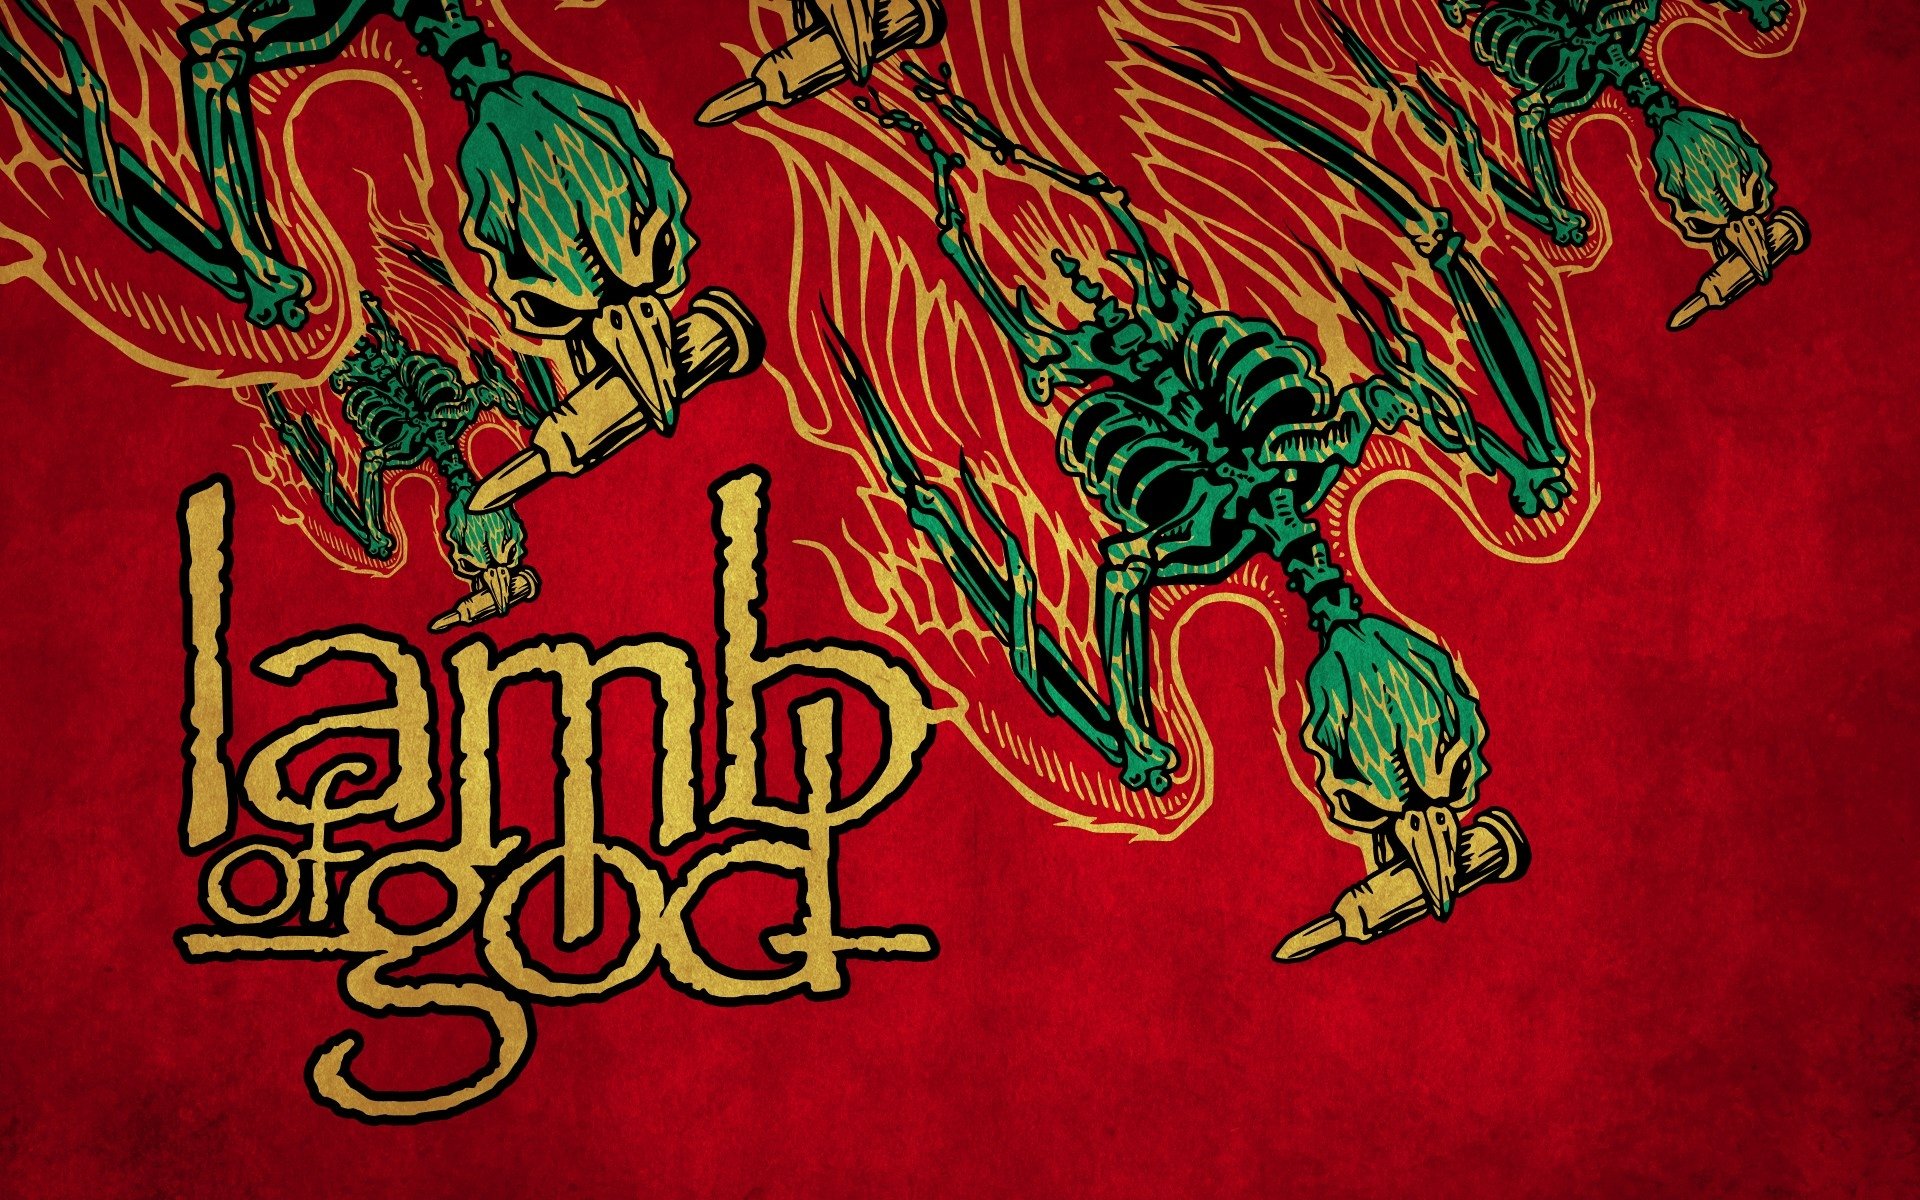 Lamb Of God - Desktop Wallpapers, Phone Wallpaper, PFP, Gifs, and More!